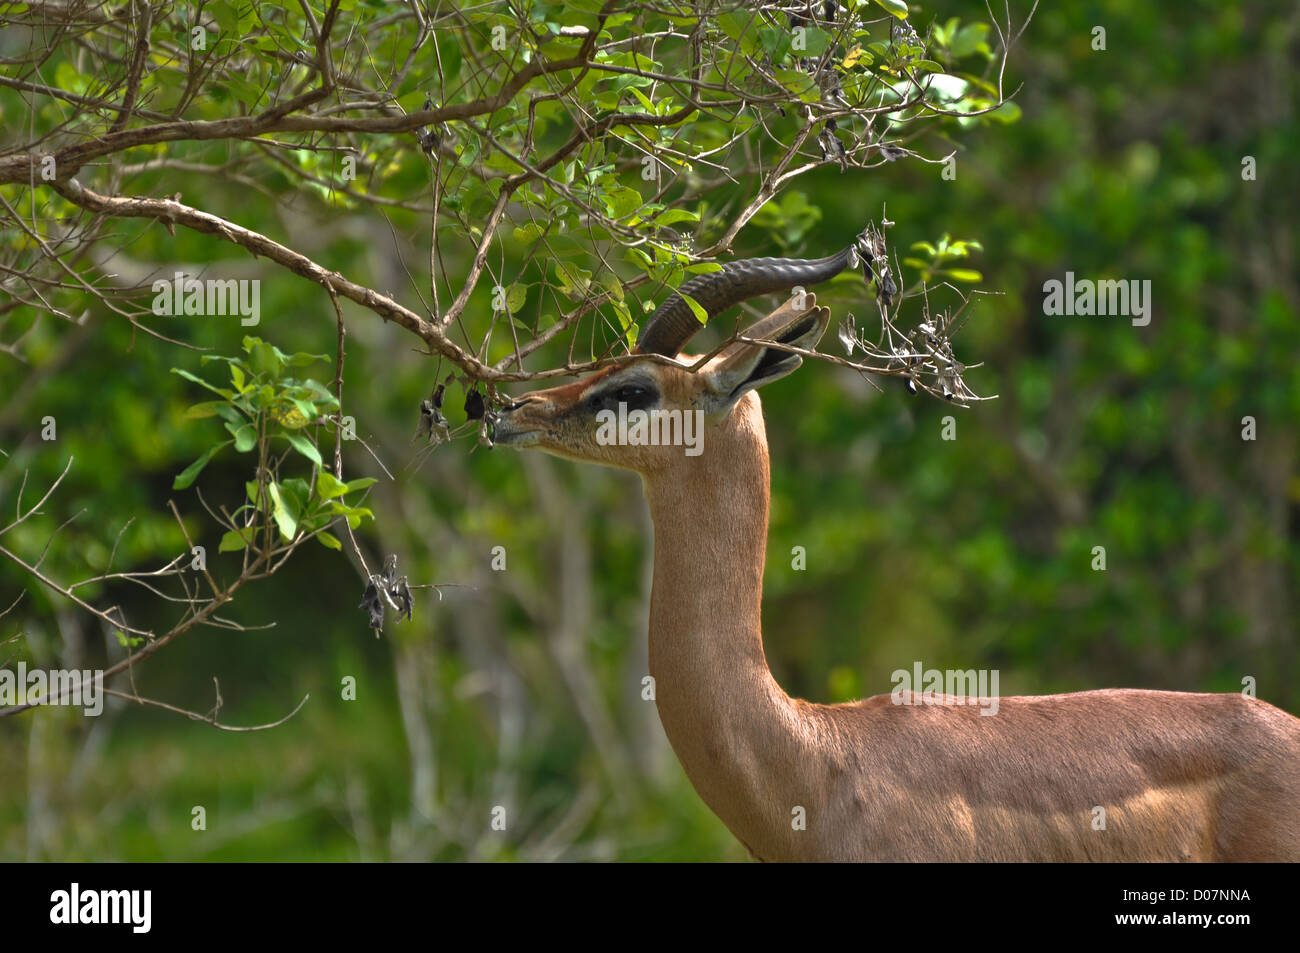 Beautiful Antelope grazing on a tree Stock Photo